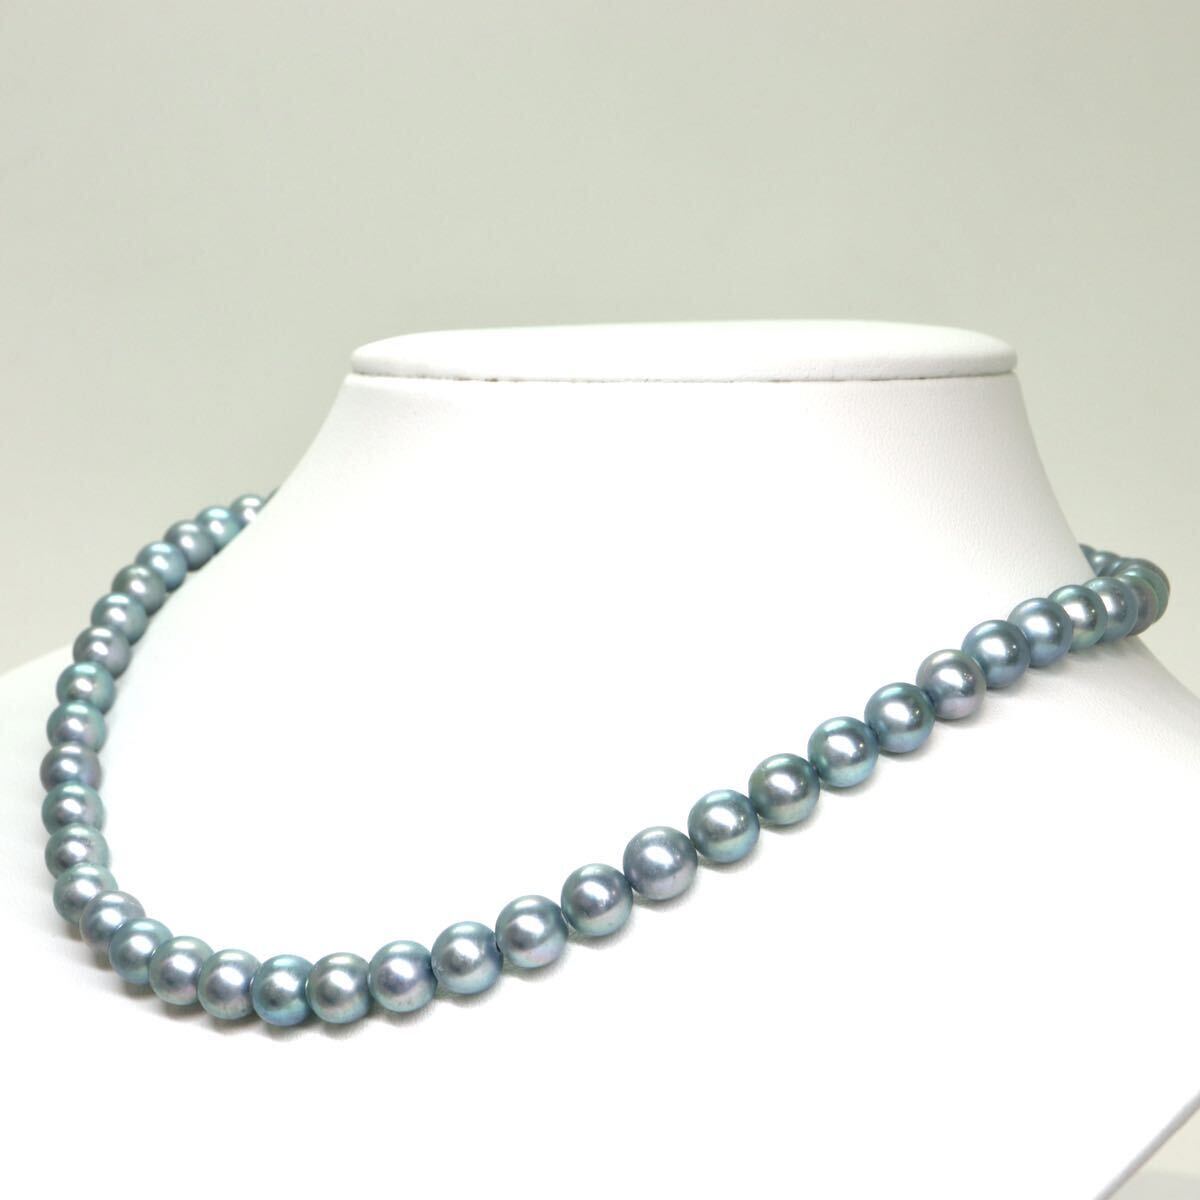 《アコヤ本真珠ネックレス》A 約7.0-7.5mm珠 33.2g 約41cm pearl necklace ジュエリー jewelry DA5/DC0の画像3